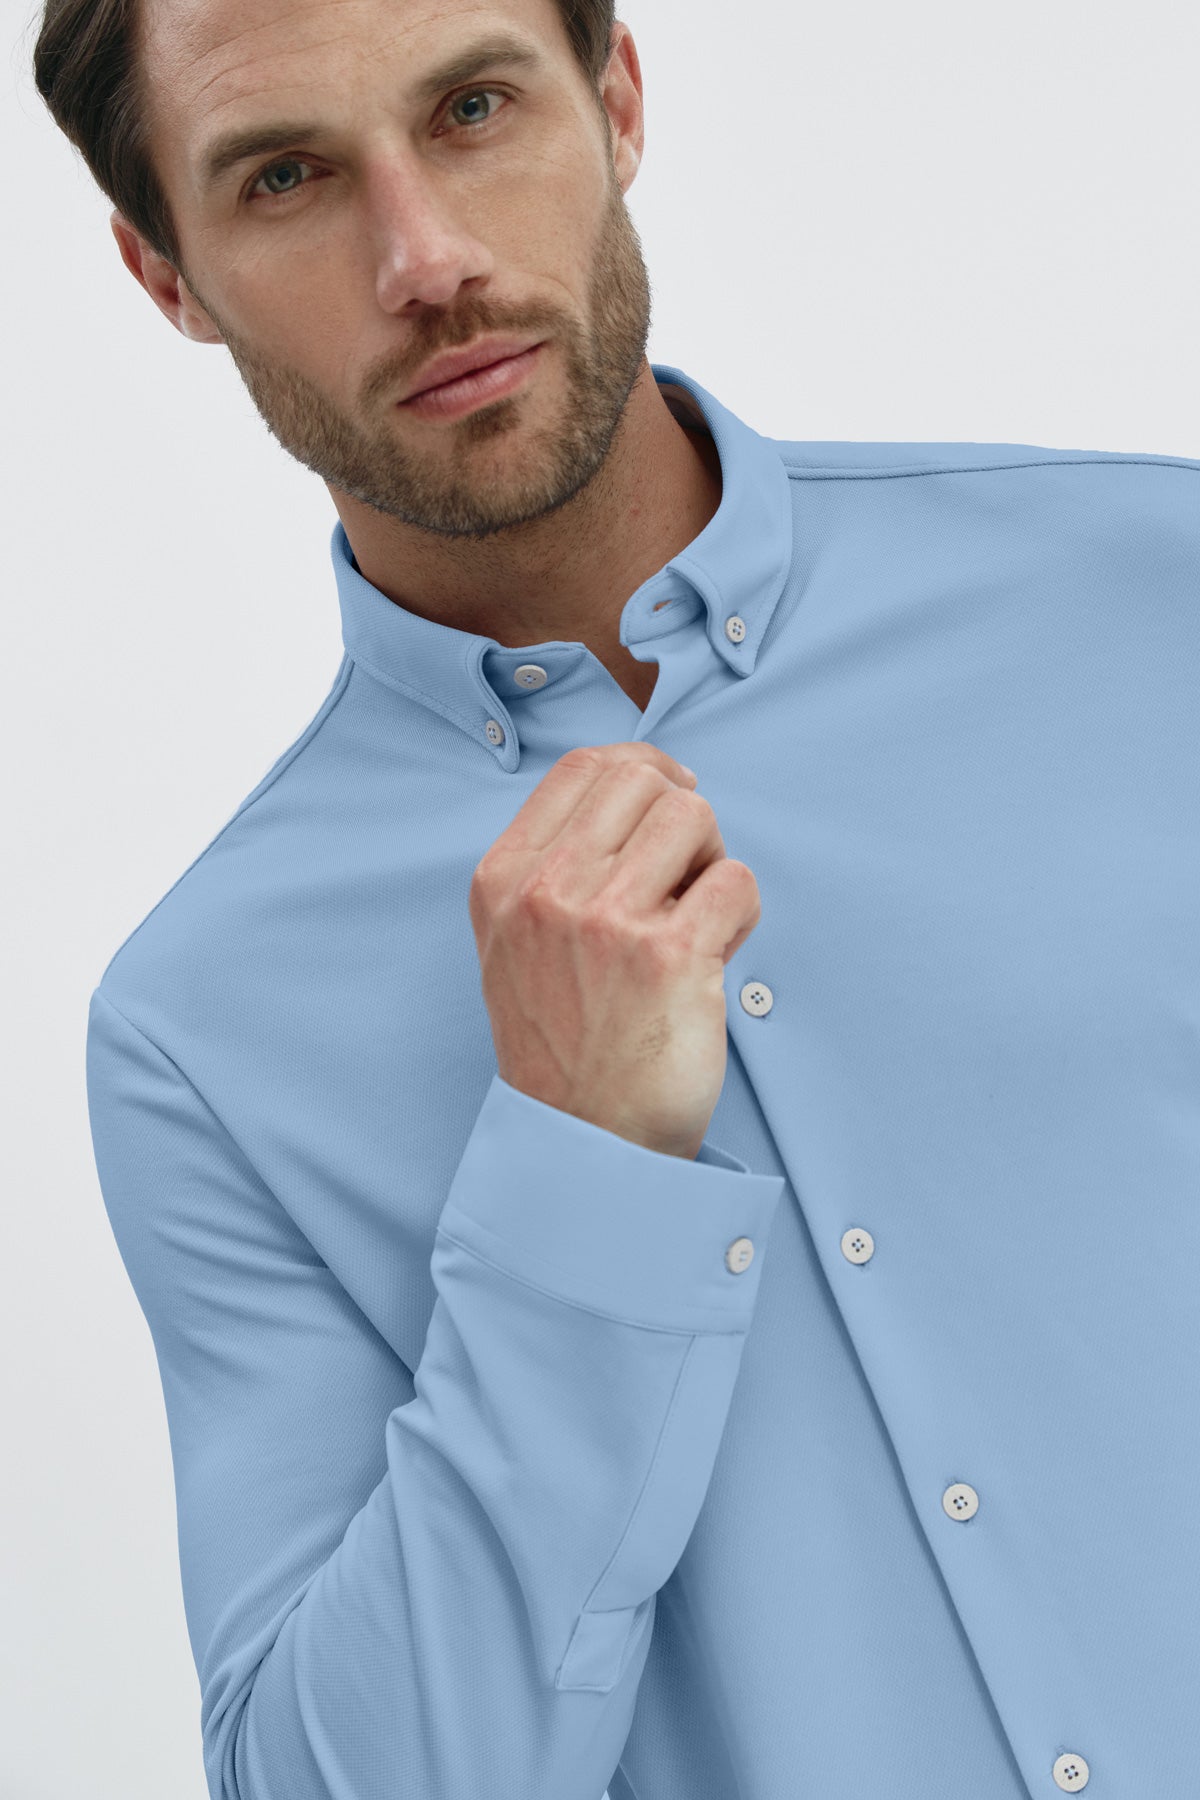 Camisa casual azul cabo regular para hombre sin arrugas ni manchas. Manga larga, antiarrugas y antimanchas. Foto retrato